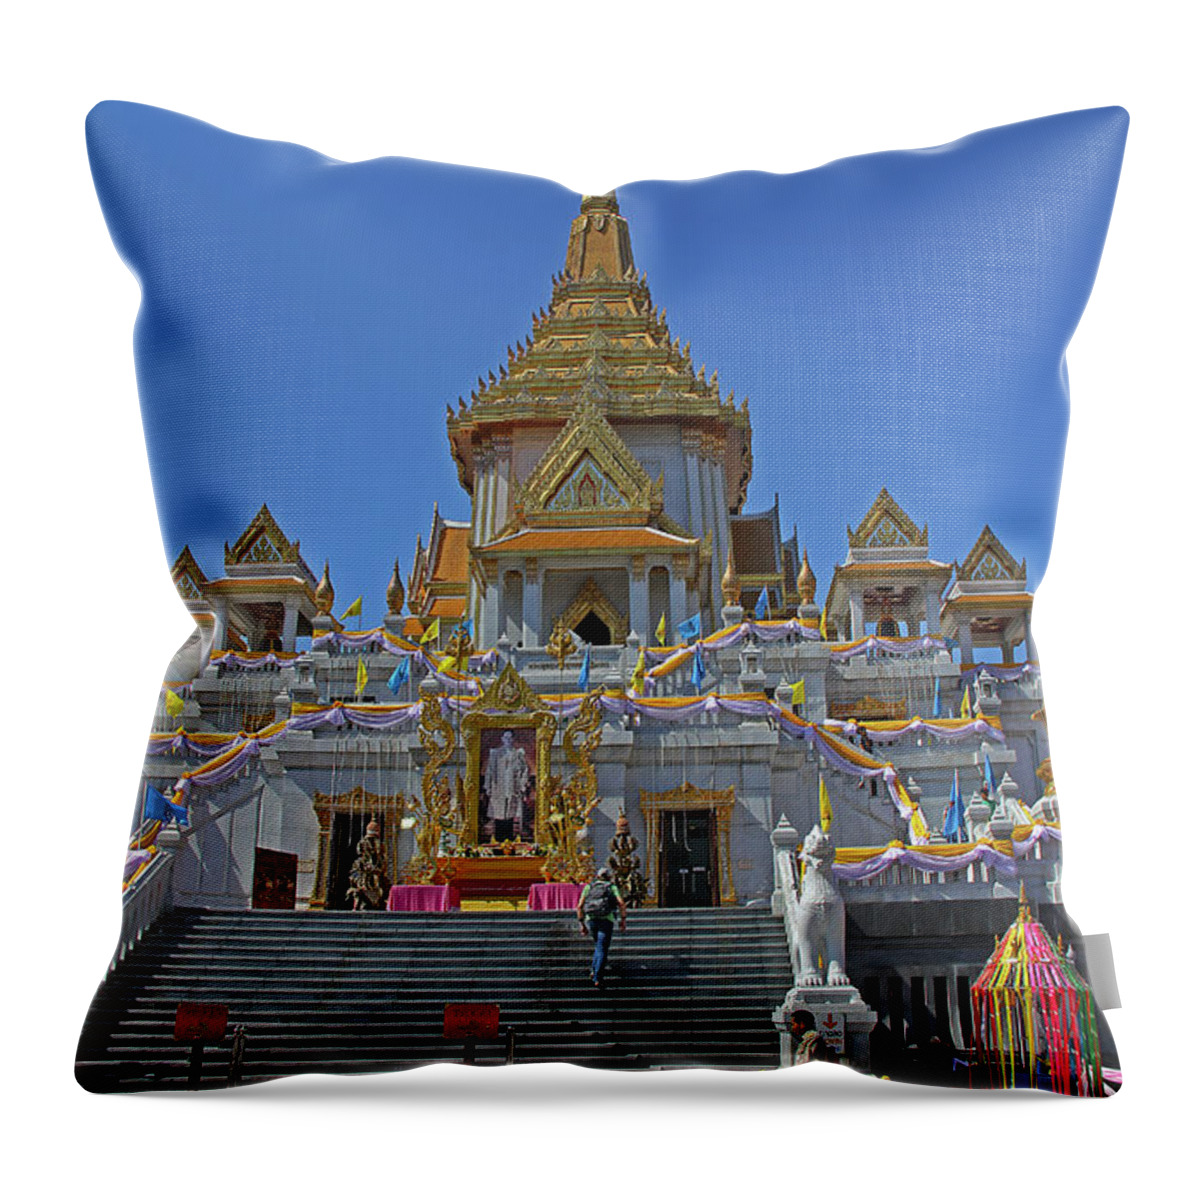 Golden Buddha Throw Pillow featuring the photograph Bangkok, Thailand - Golden Buddha Temple by Richard Krebs